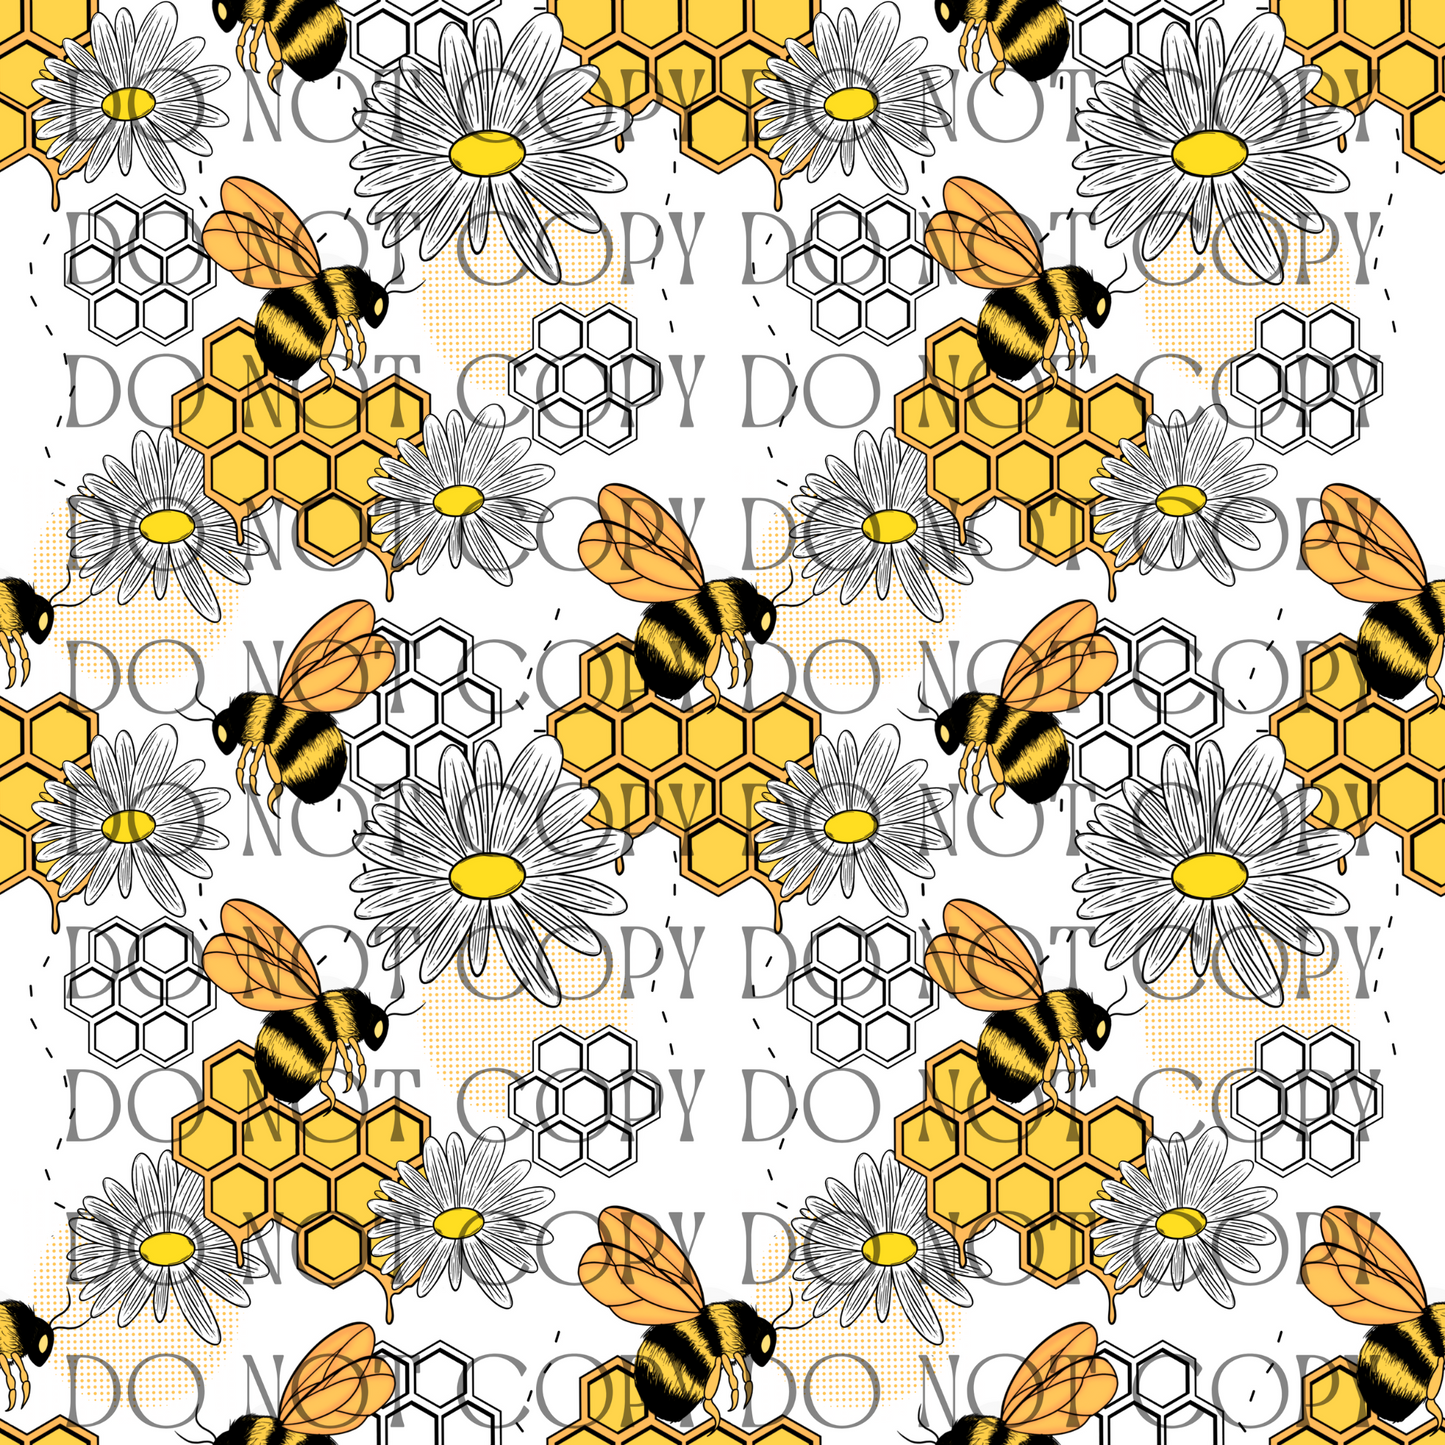 Busy Bees - Opaque Vinyl Sheet